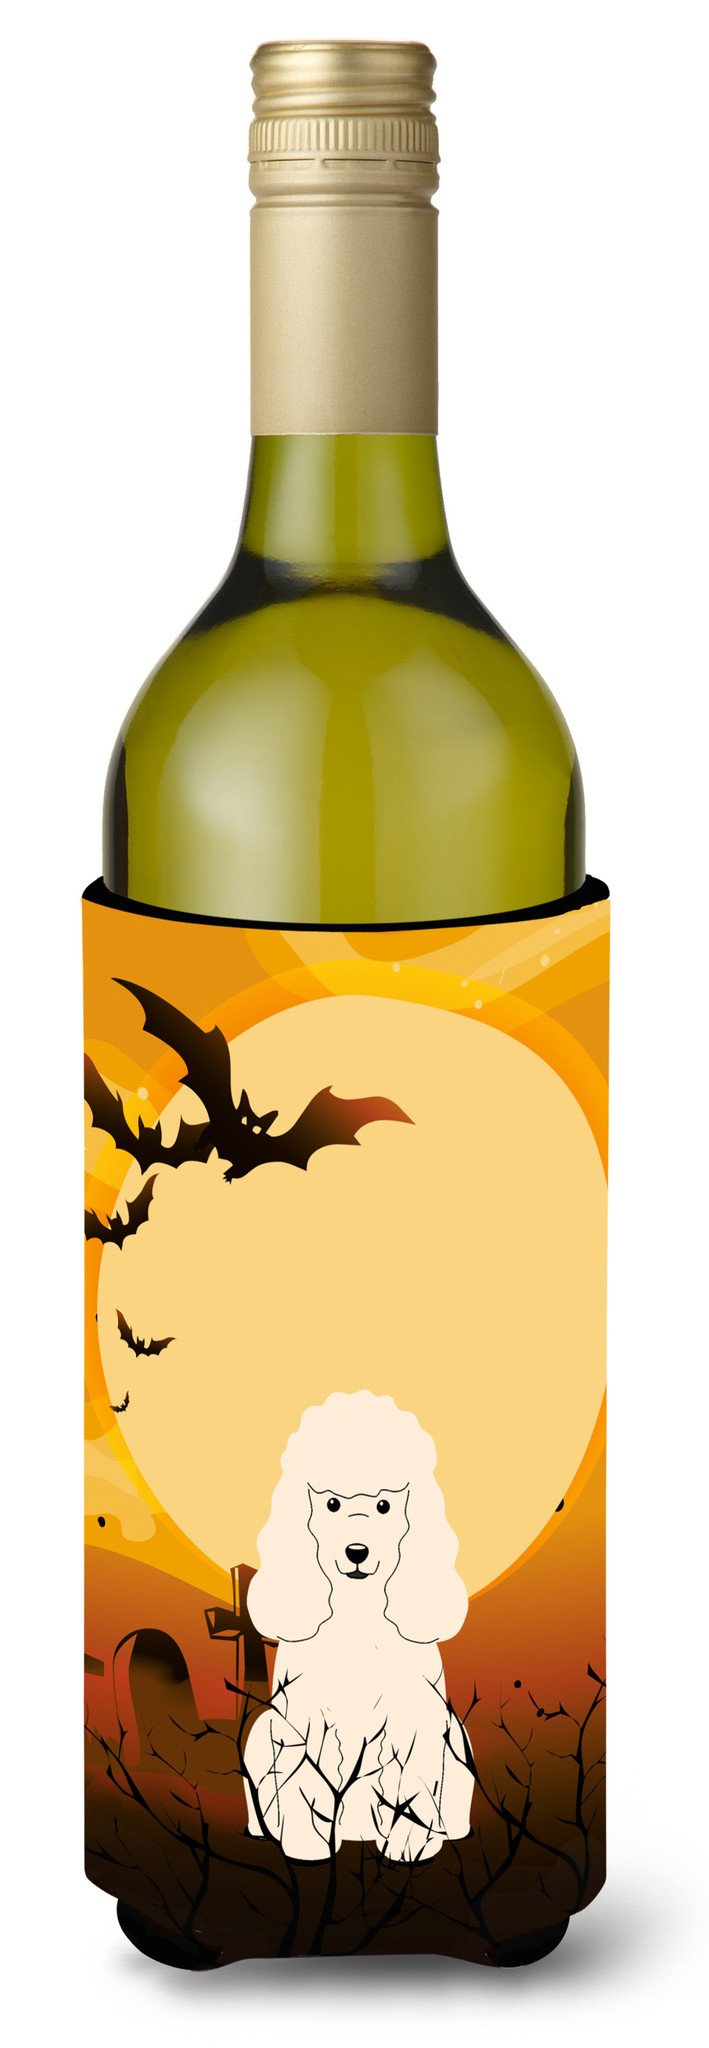 Halloween Poodle White Wine Bottle Beverge Insulator Hugger BB4336LITERK by Caroline's Treasures